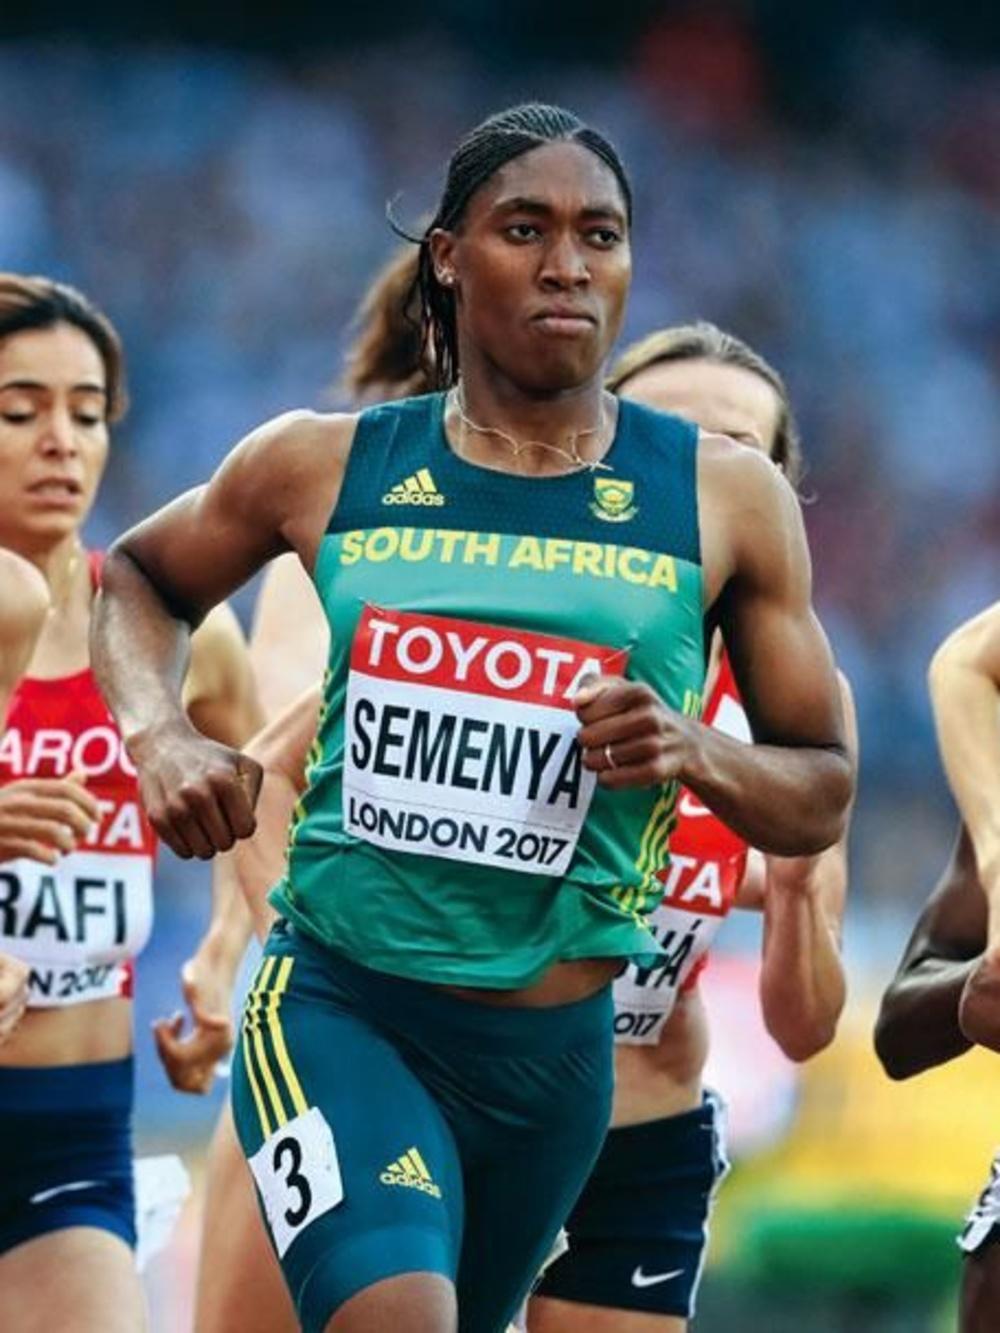 LA sud-africaine Caster Semenya aux Championnats du Monde IAAF 2017 au London Stadium.